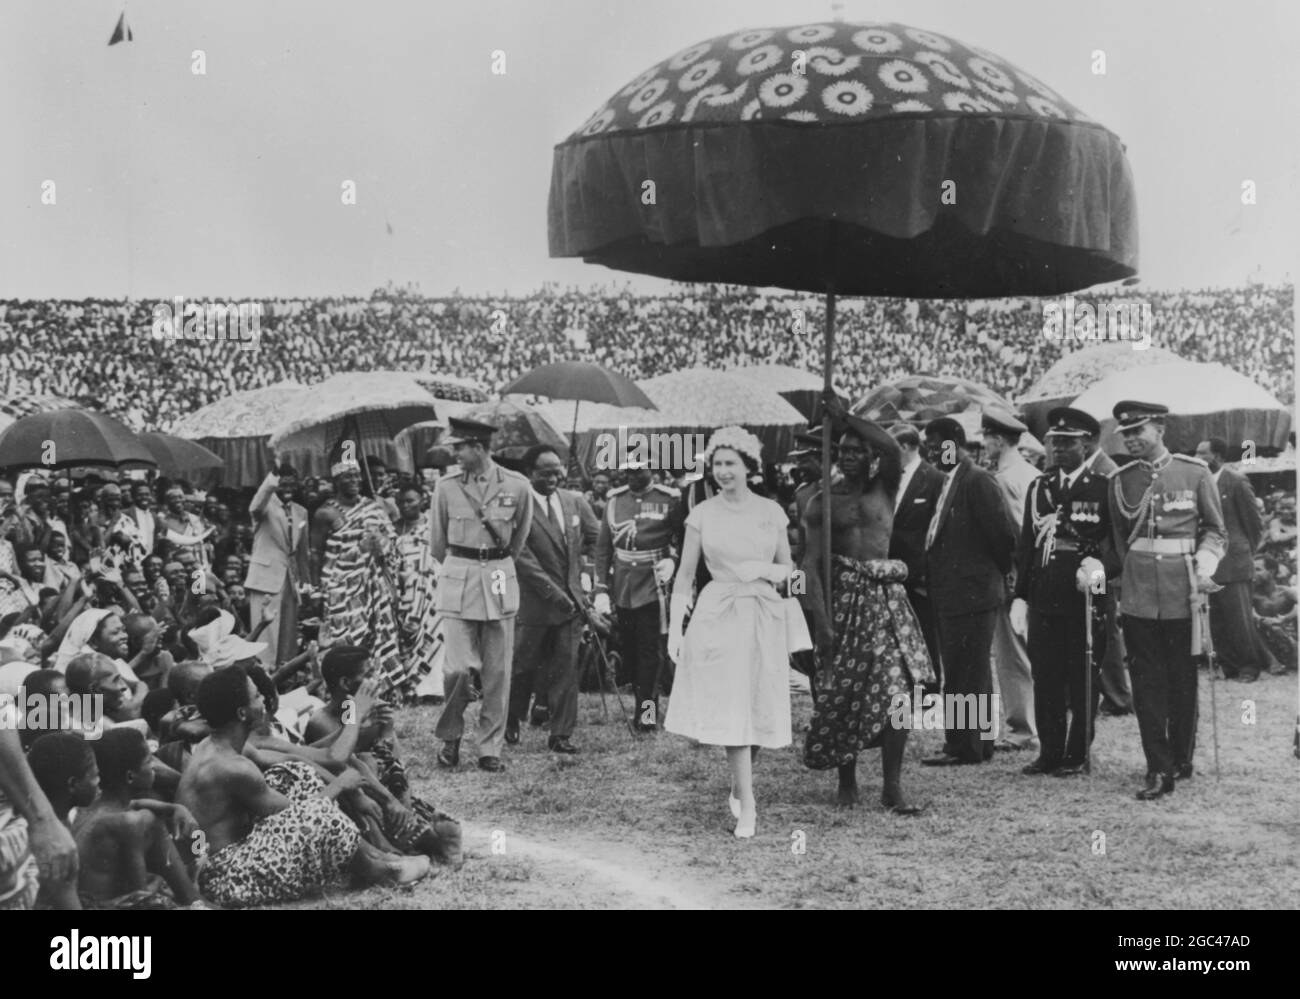 Philibet Excerpts — On 18 November 1961, the Queen danced Ghanaian